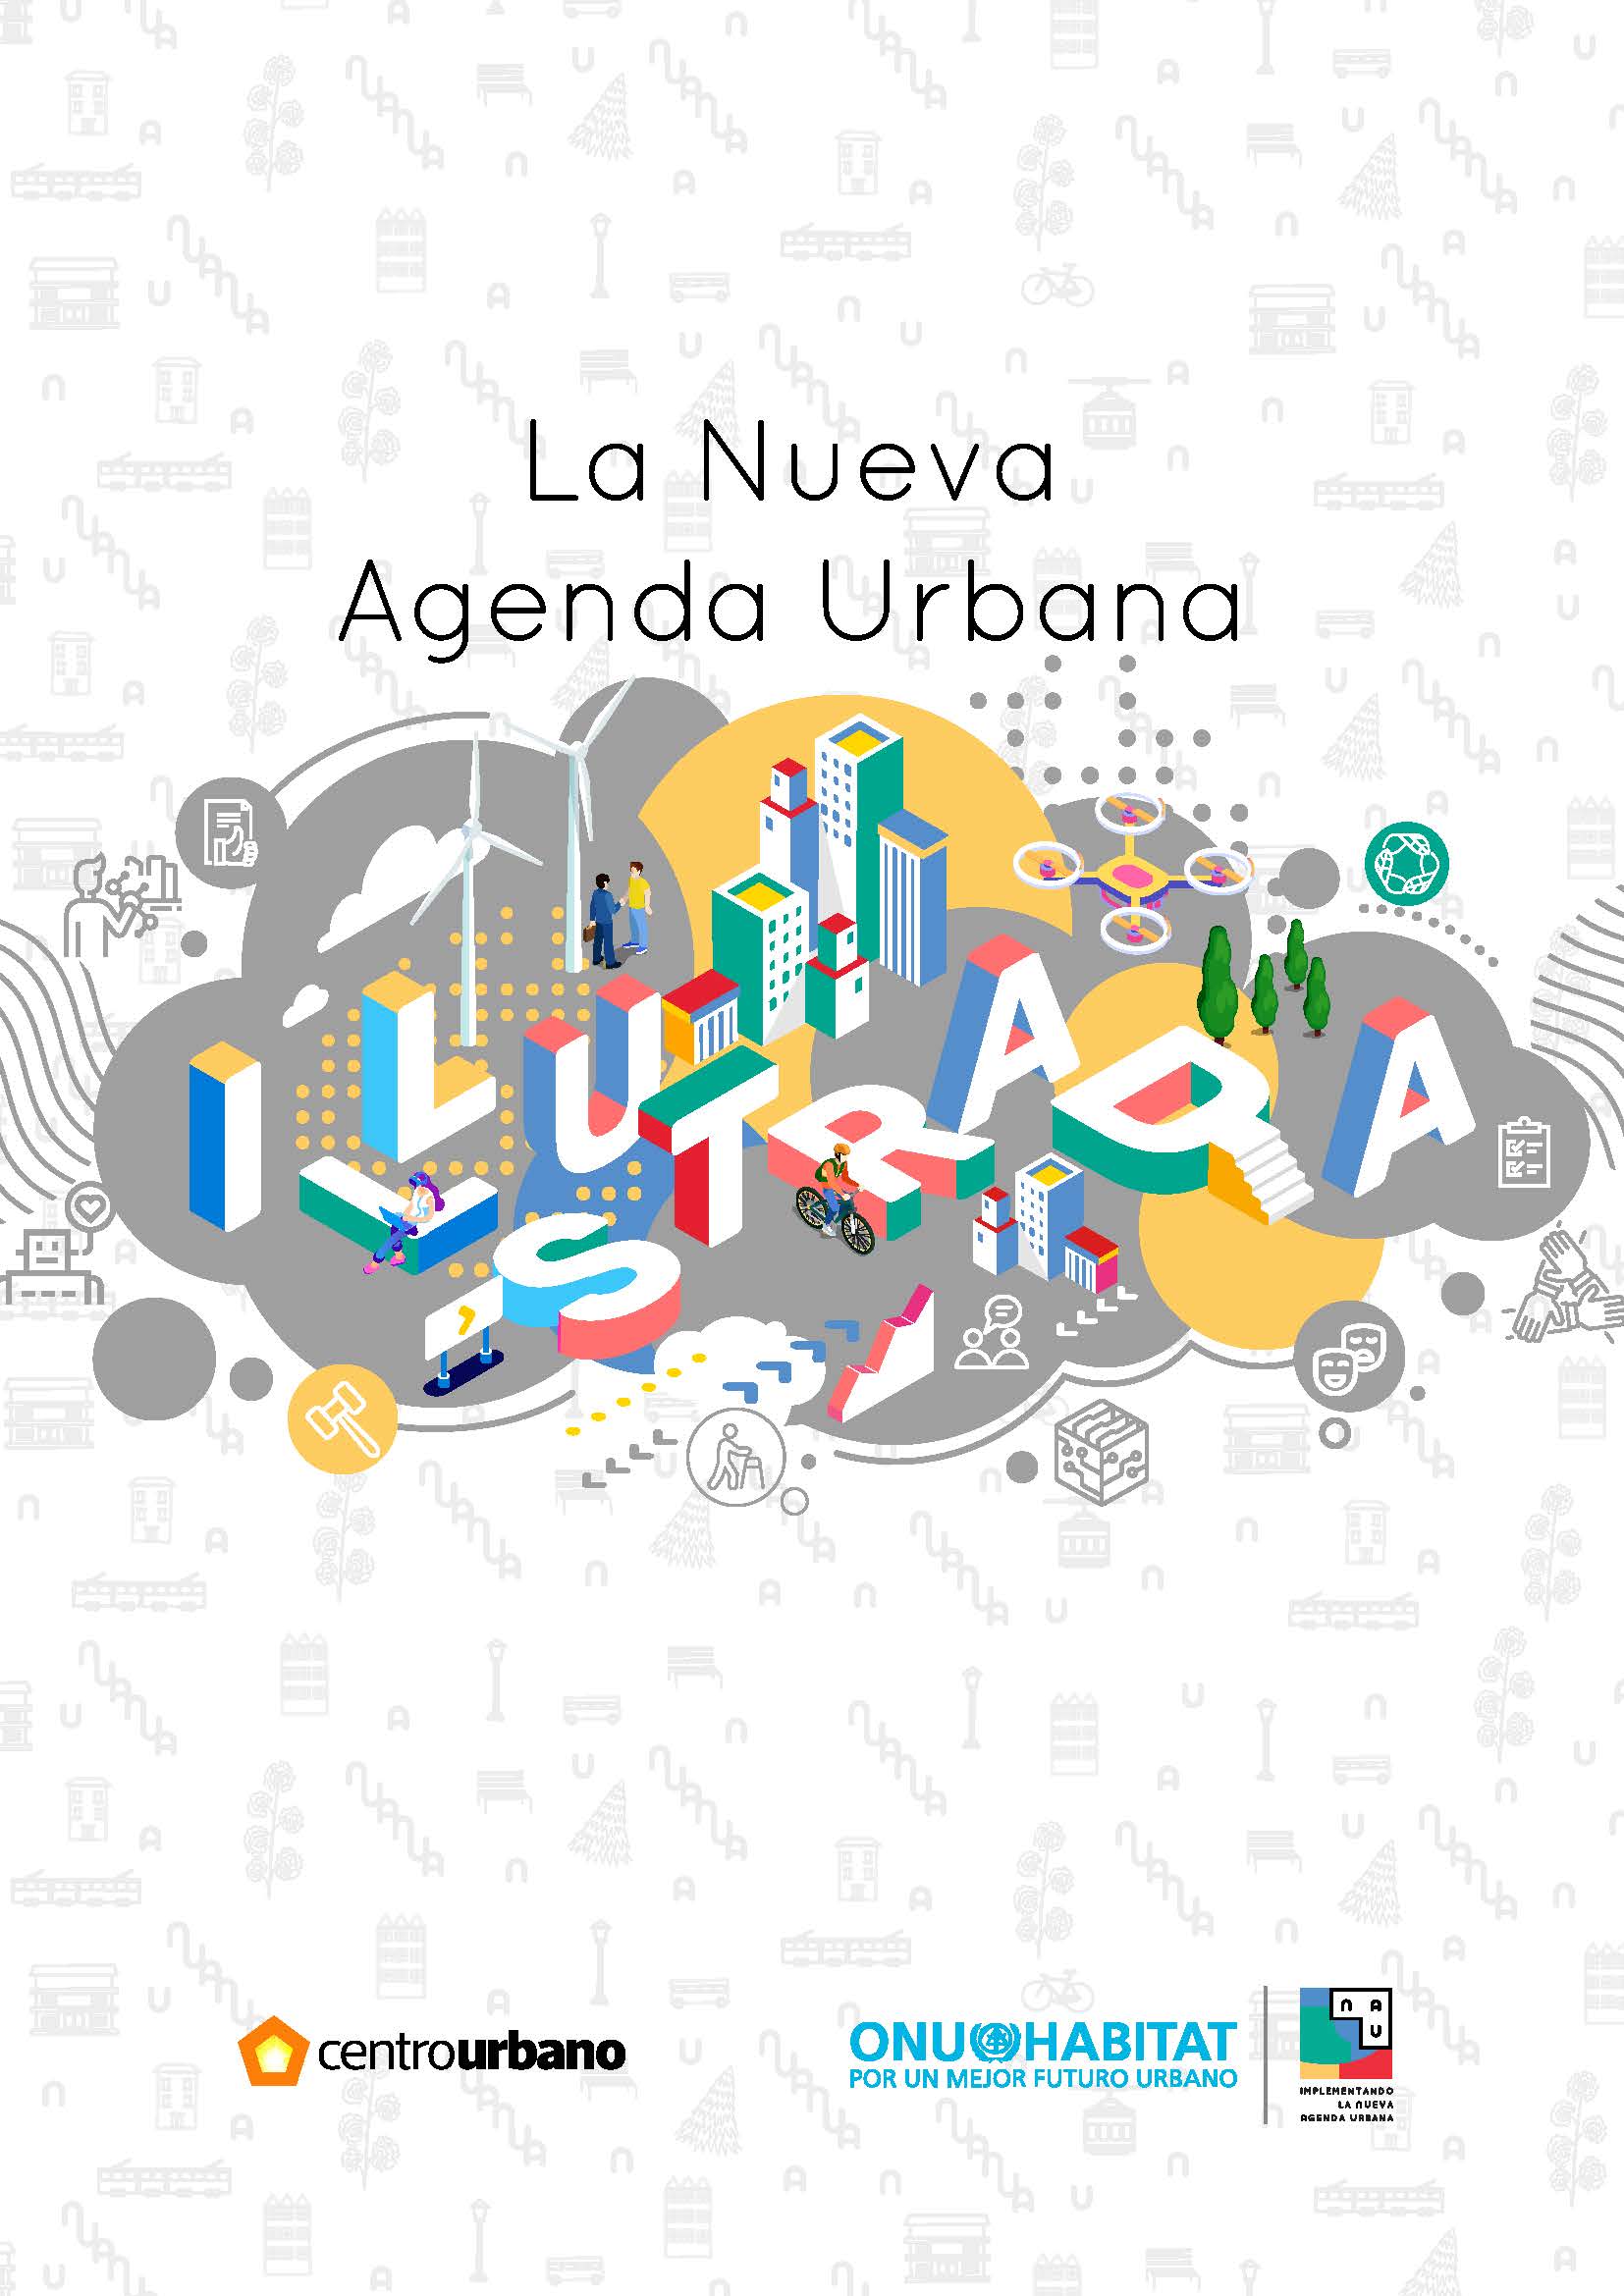 La Nueva Agenda Urbana Ilustrada